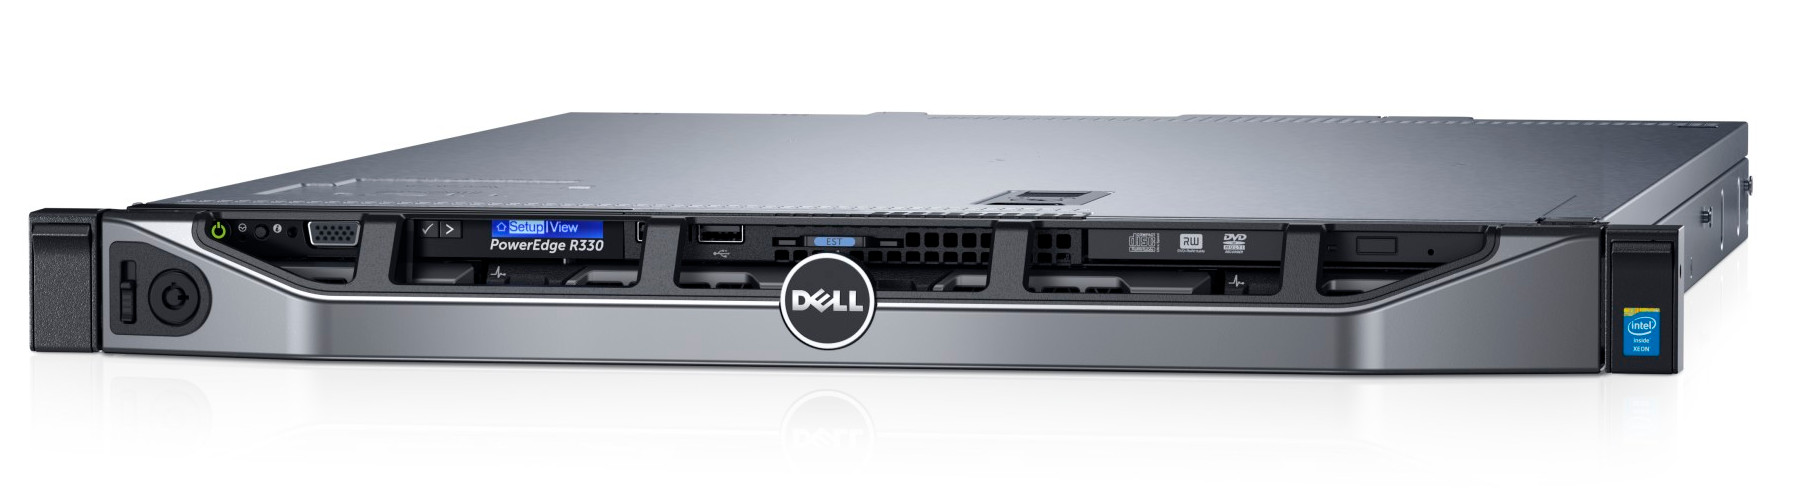 Server Dell rack PowerEdge R330